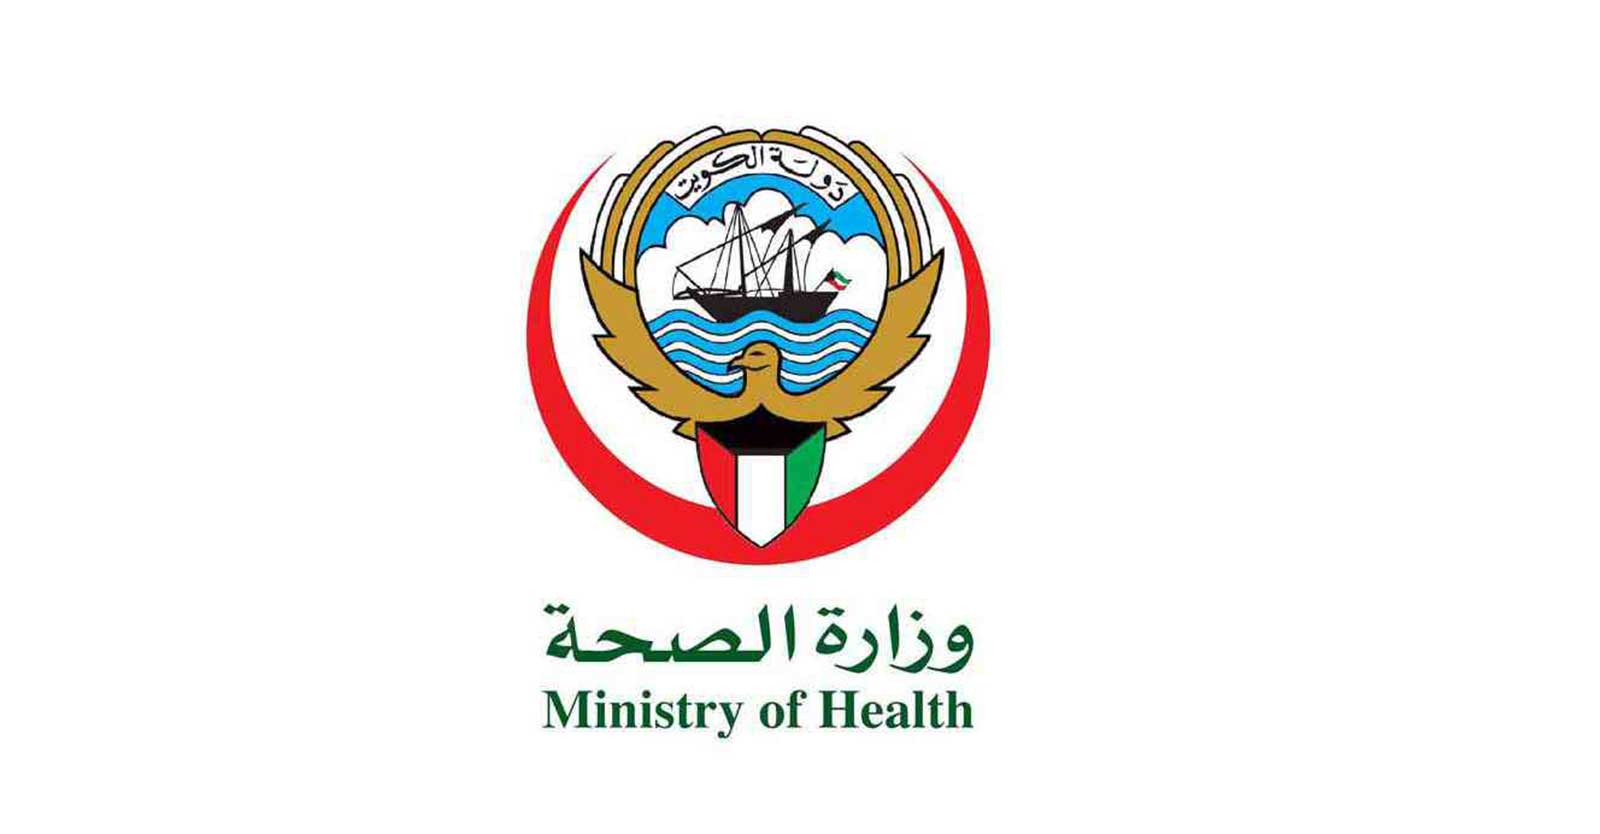 الكويت ترصد إصابة بمرض الكوليرا